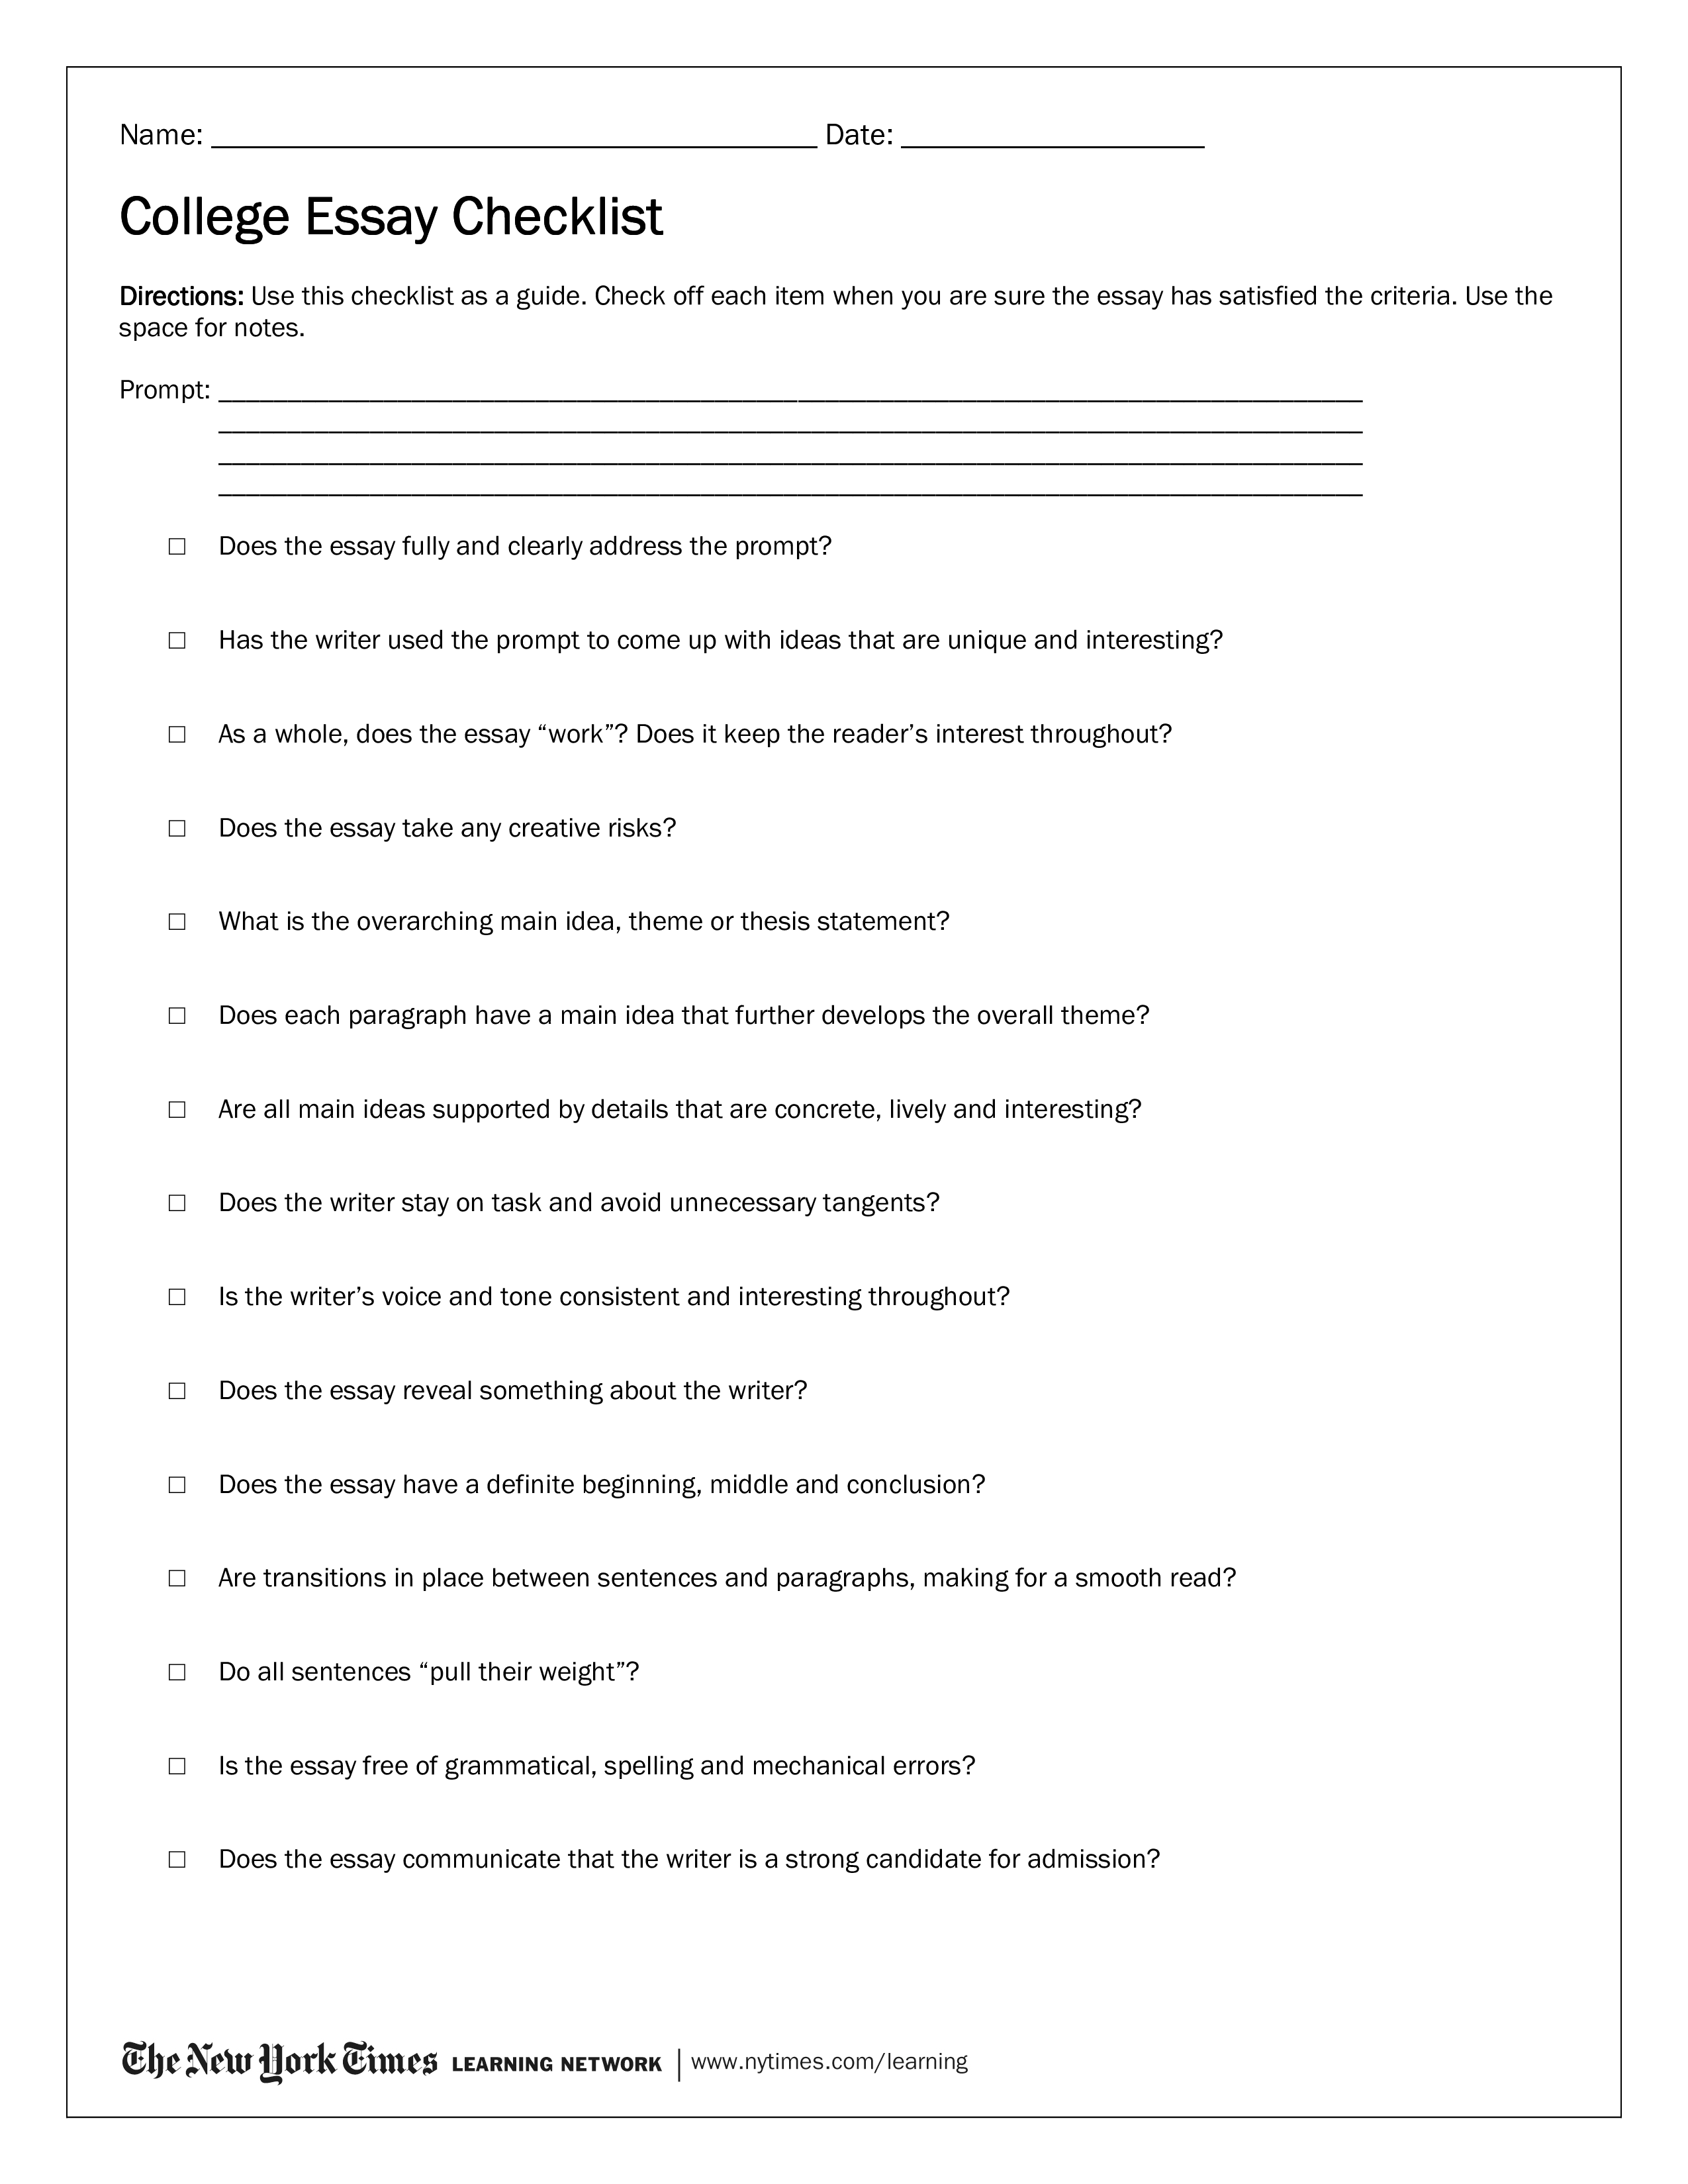 college essay checklist plantilla imagen principal